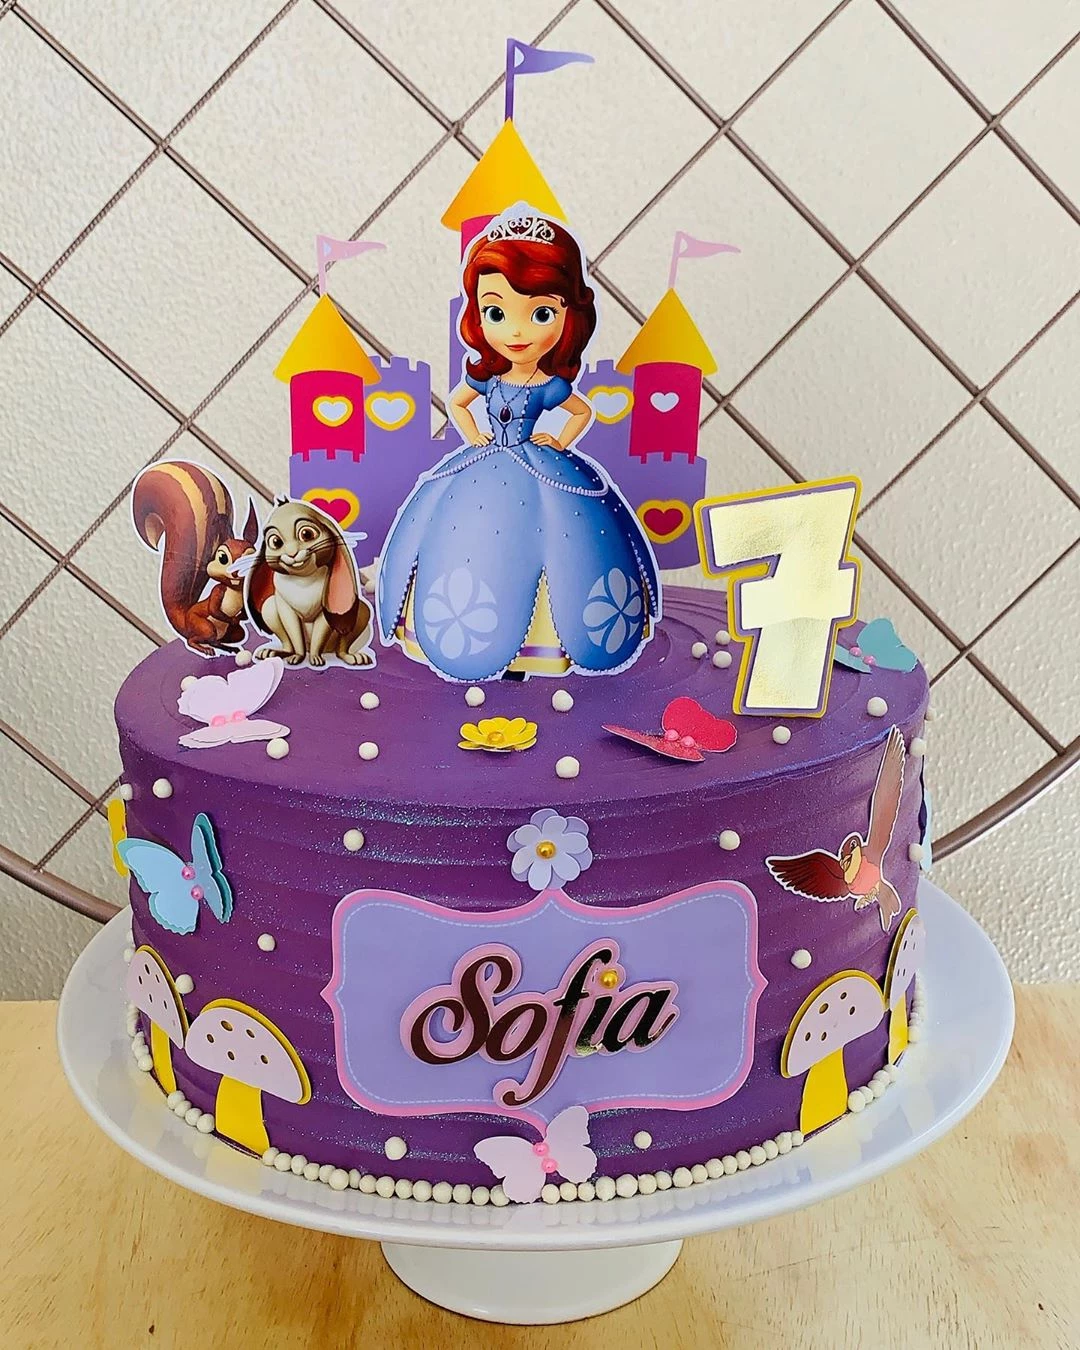 Foto de bolo da princesa sofia 13 - 16